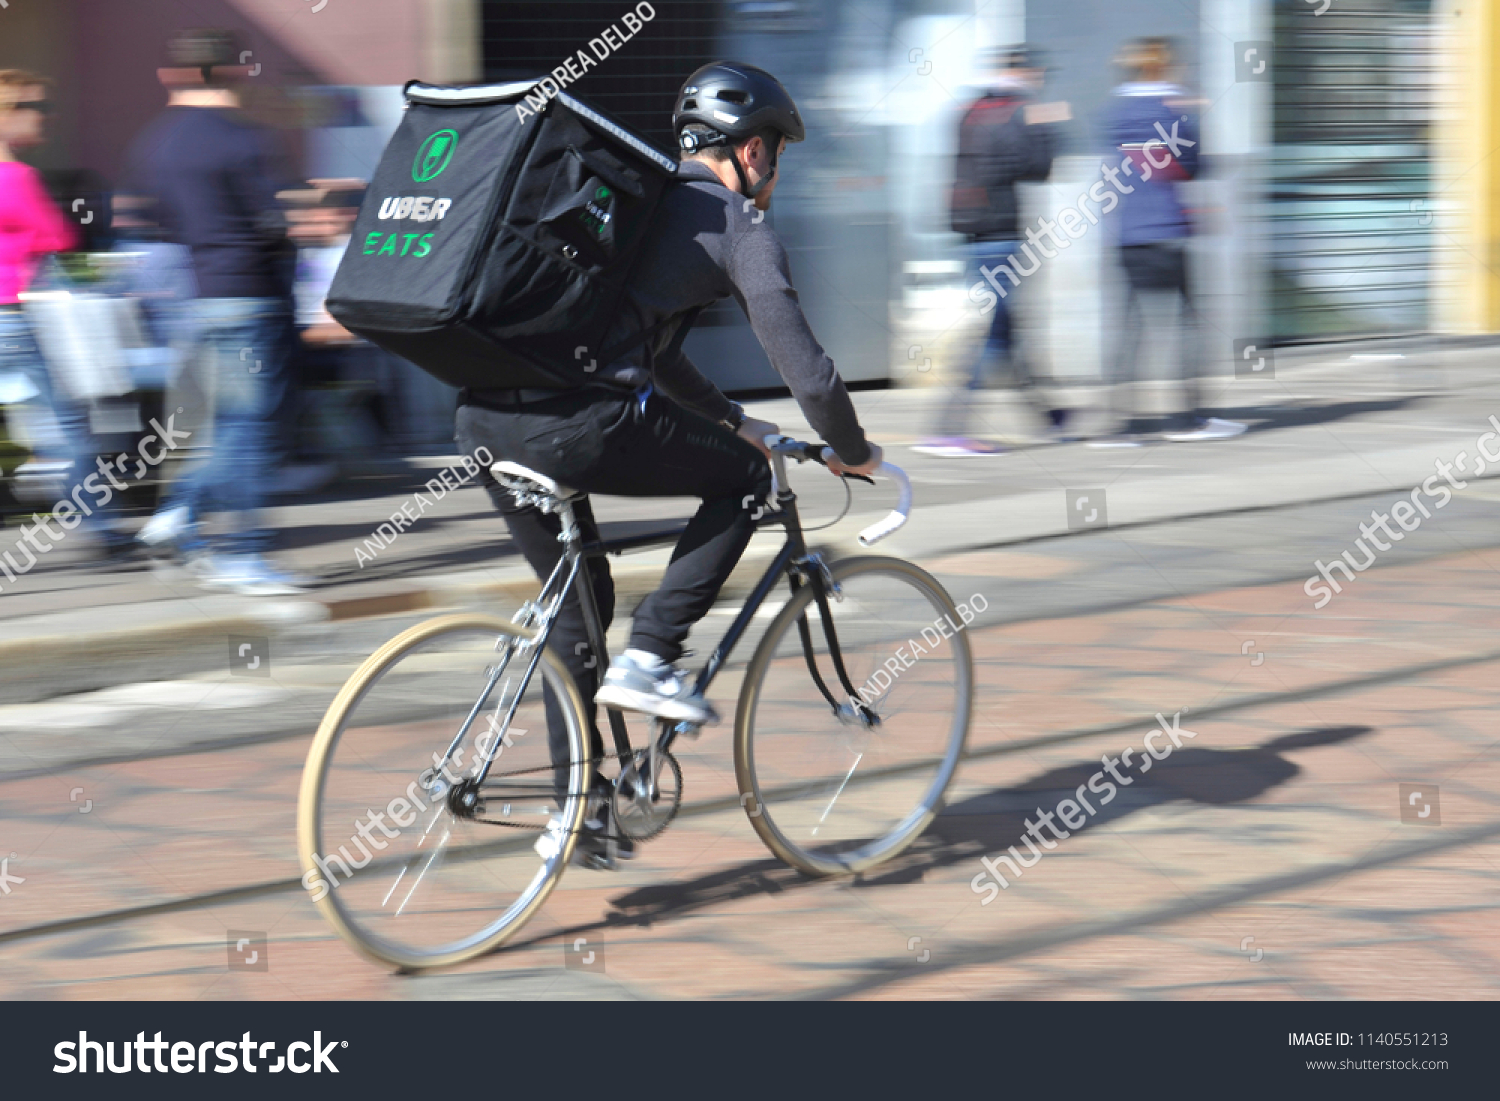 uber bike delivery